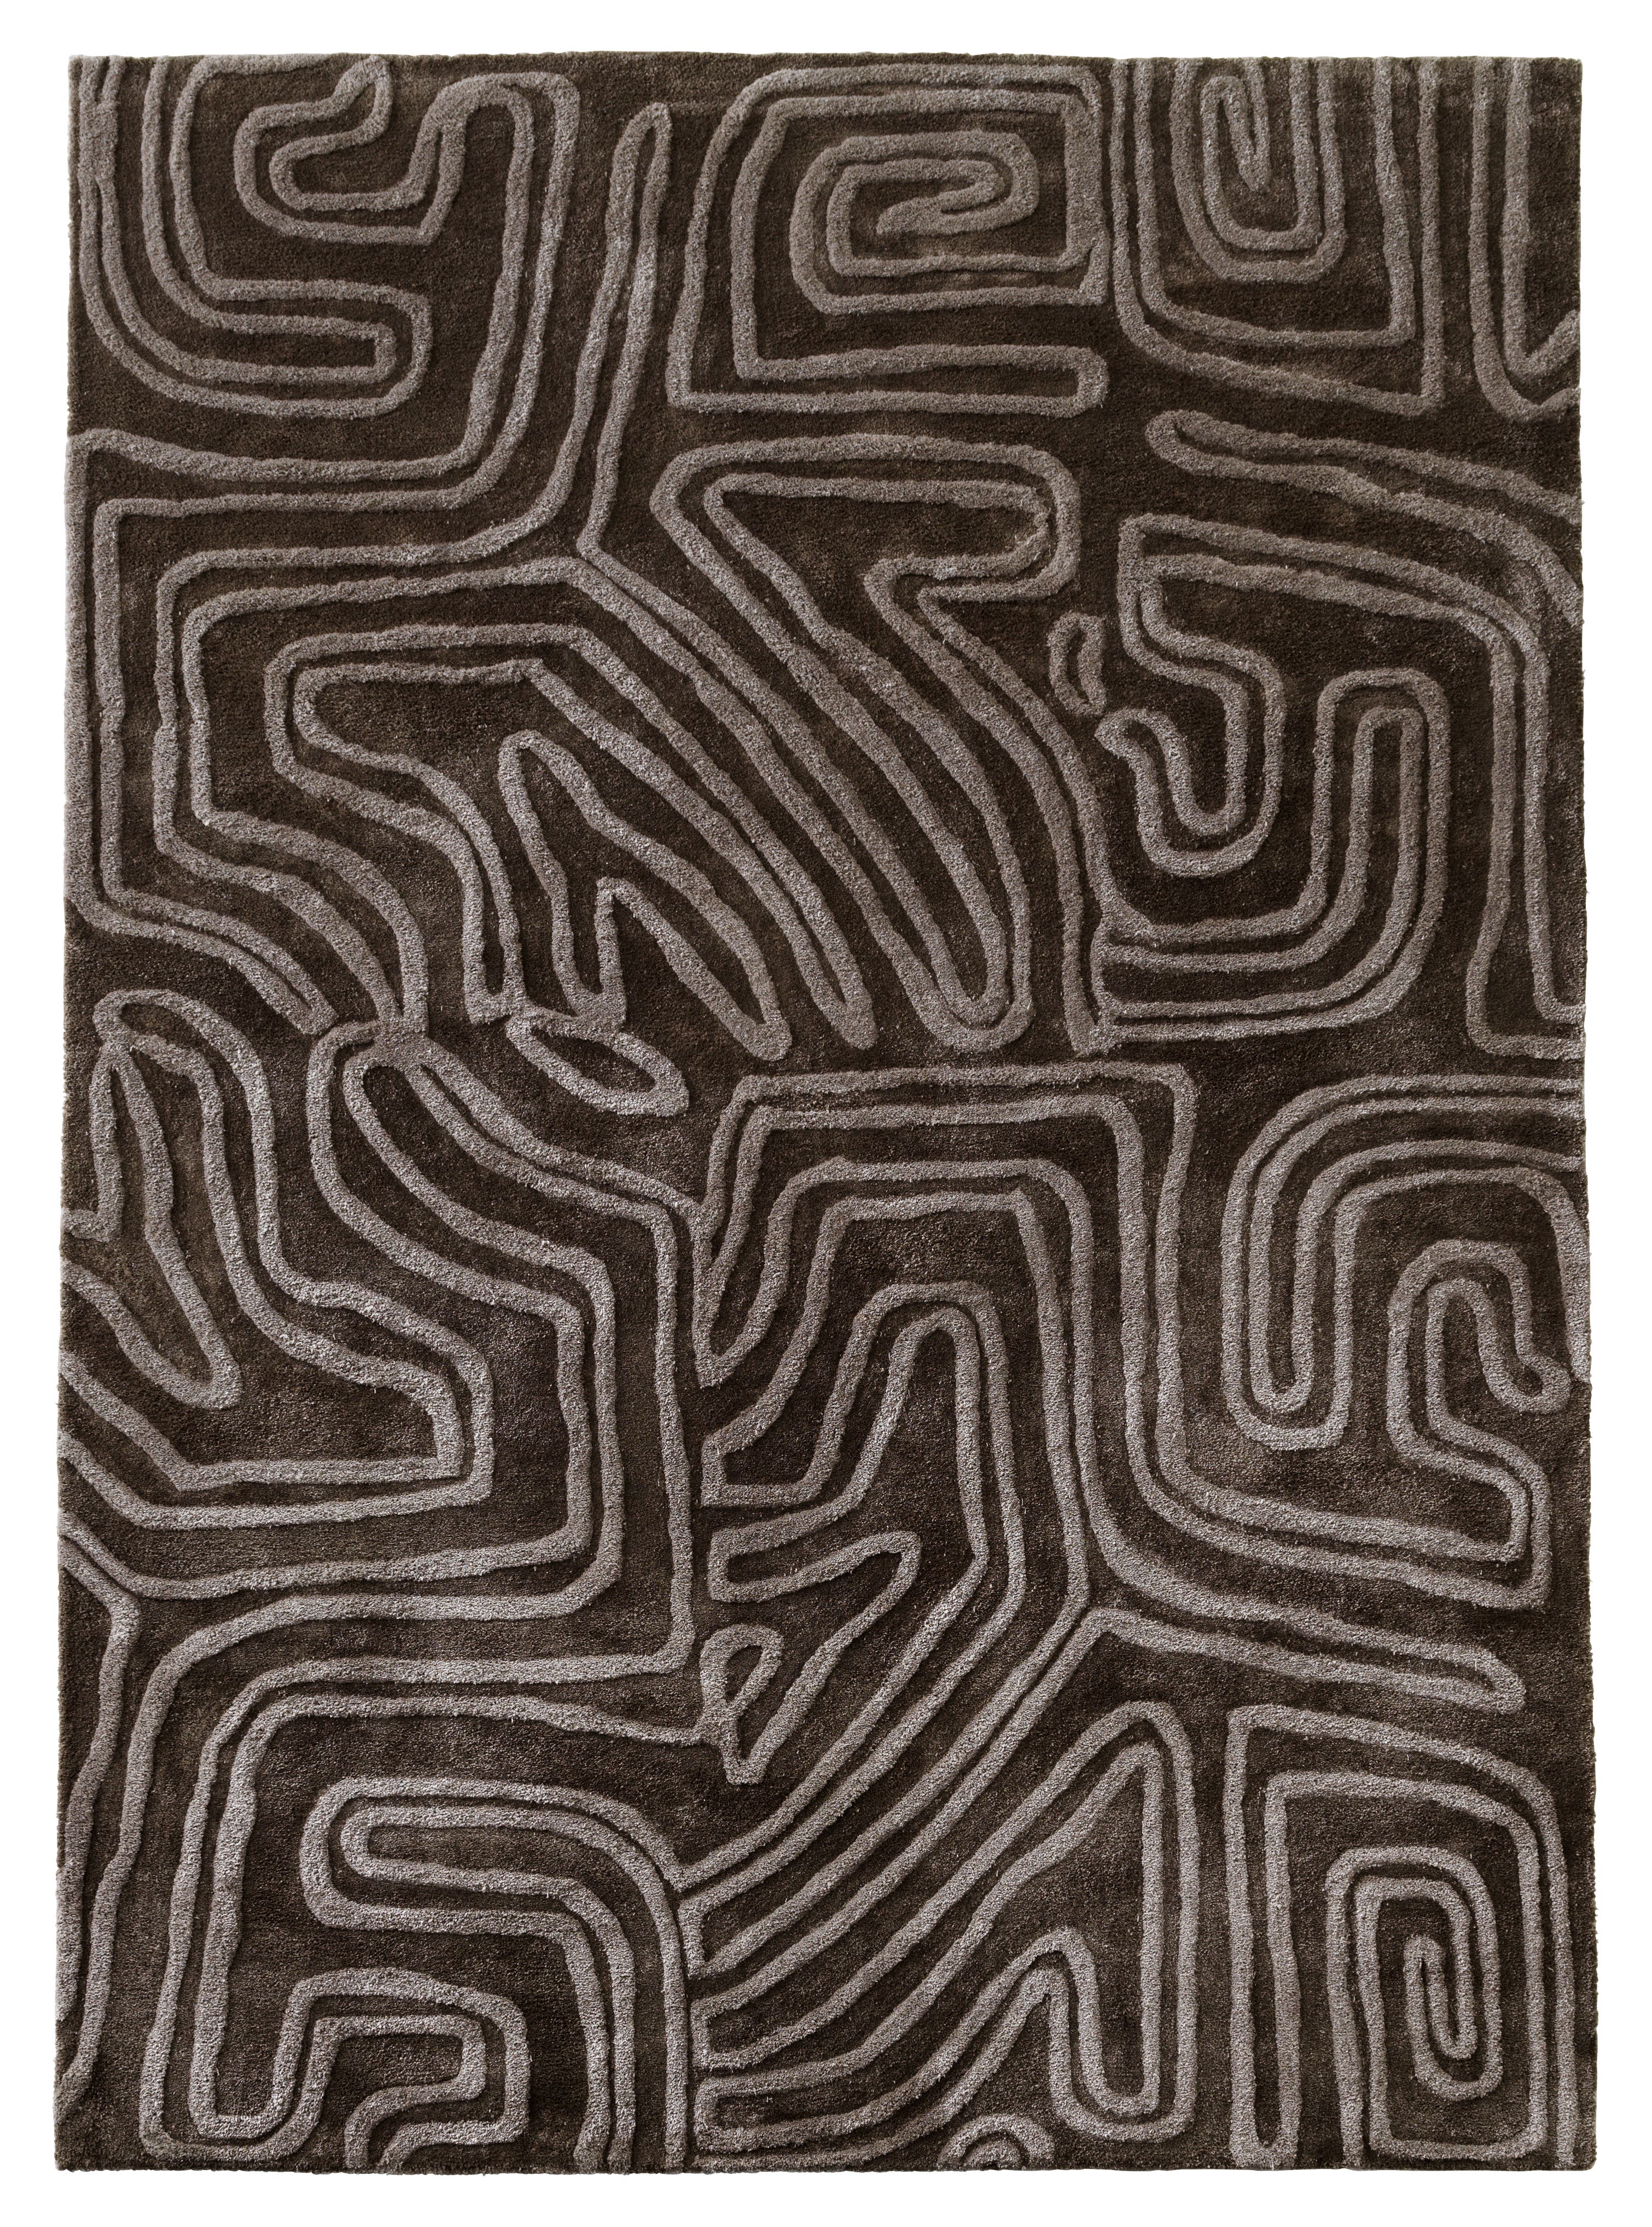 Passage rug